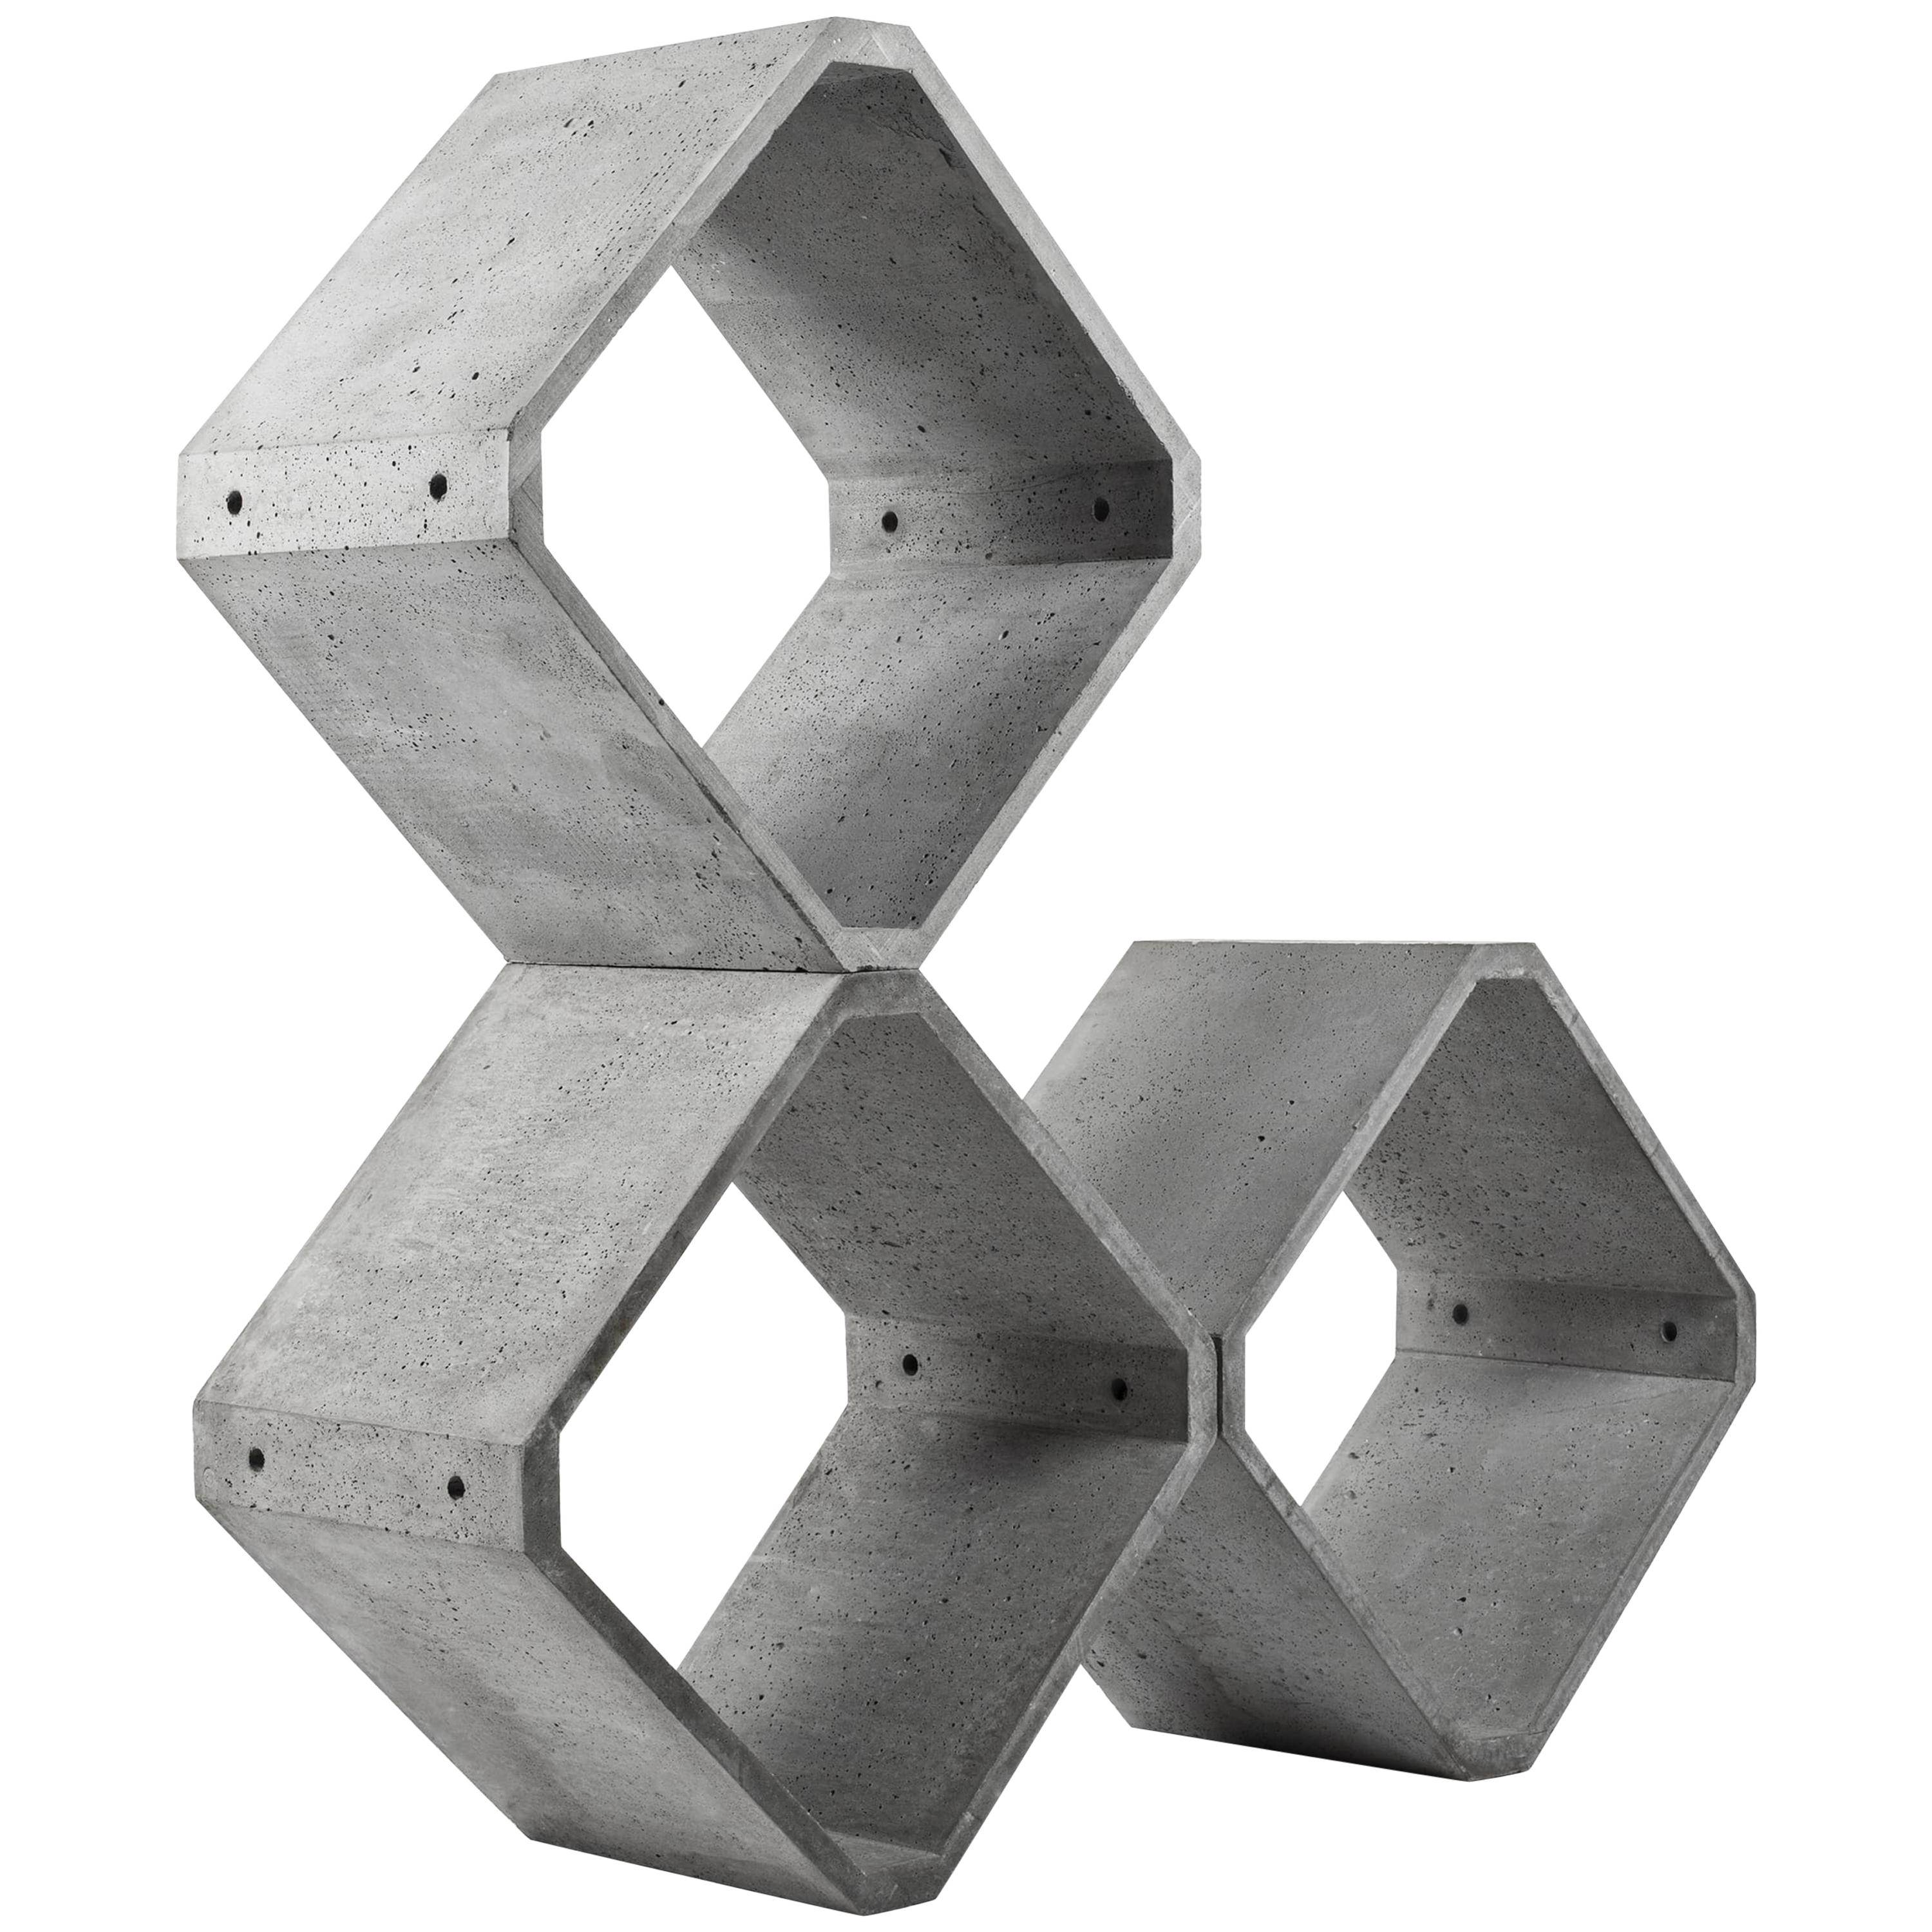 Modular Storage 'KOU' Made of Concrete